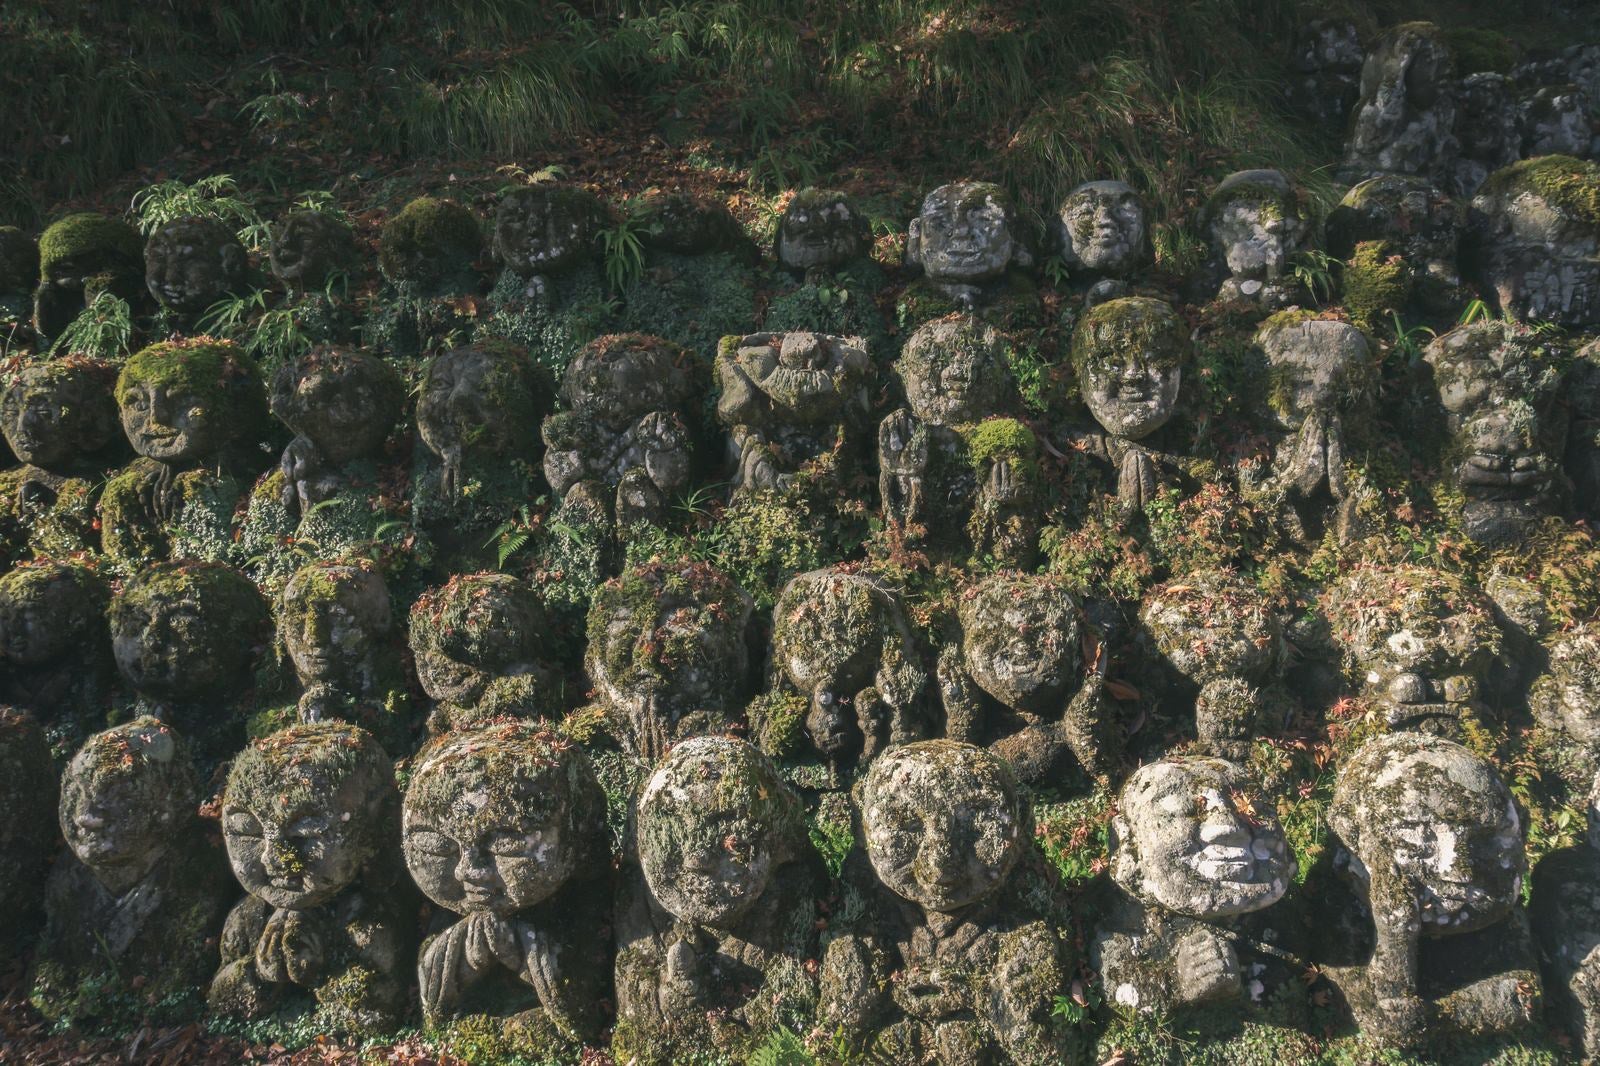 「様々な表情の羅漢像が迎えてくれる愛宕念仏寺」の写真